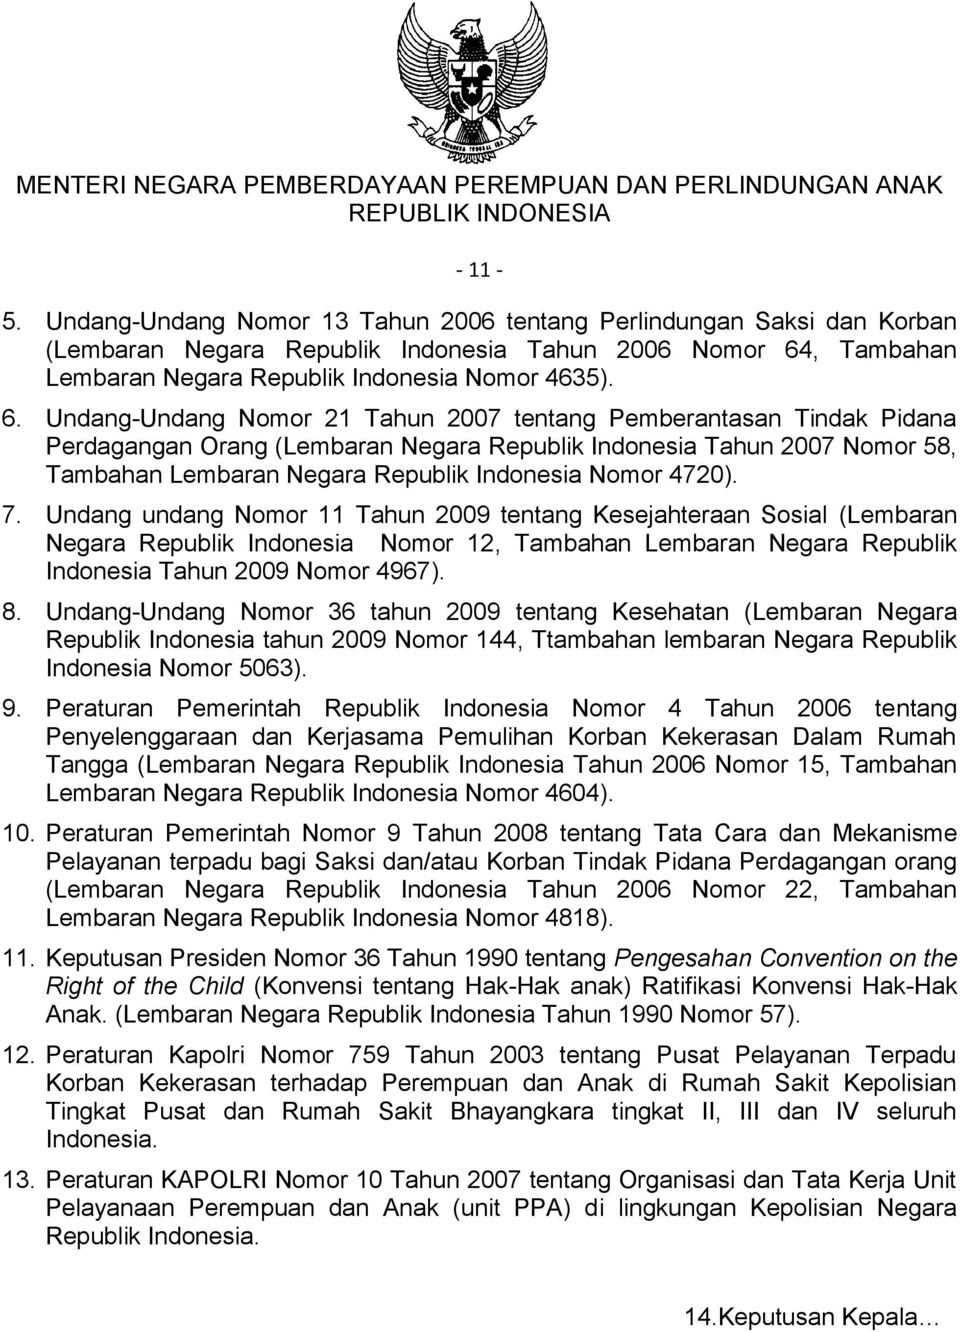 Undang-Undang Nomor 21 Tahun 2007 tentang Pemberantasan Tindak Pidana Perdagangan Orang (Lembaran Negara Republik Indonesia Tahun 2007 Nomor 58, Tambahan Lembaran Negara Republik Indonesia Nomor